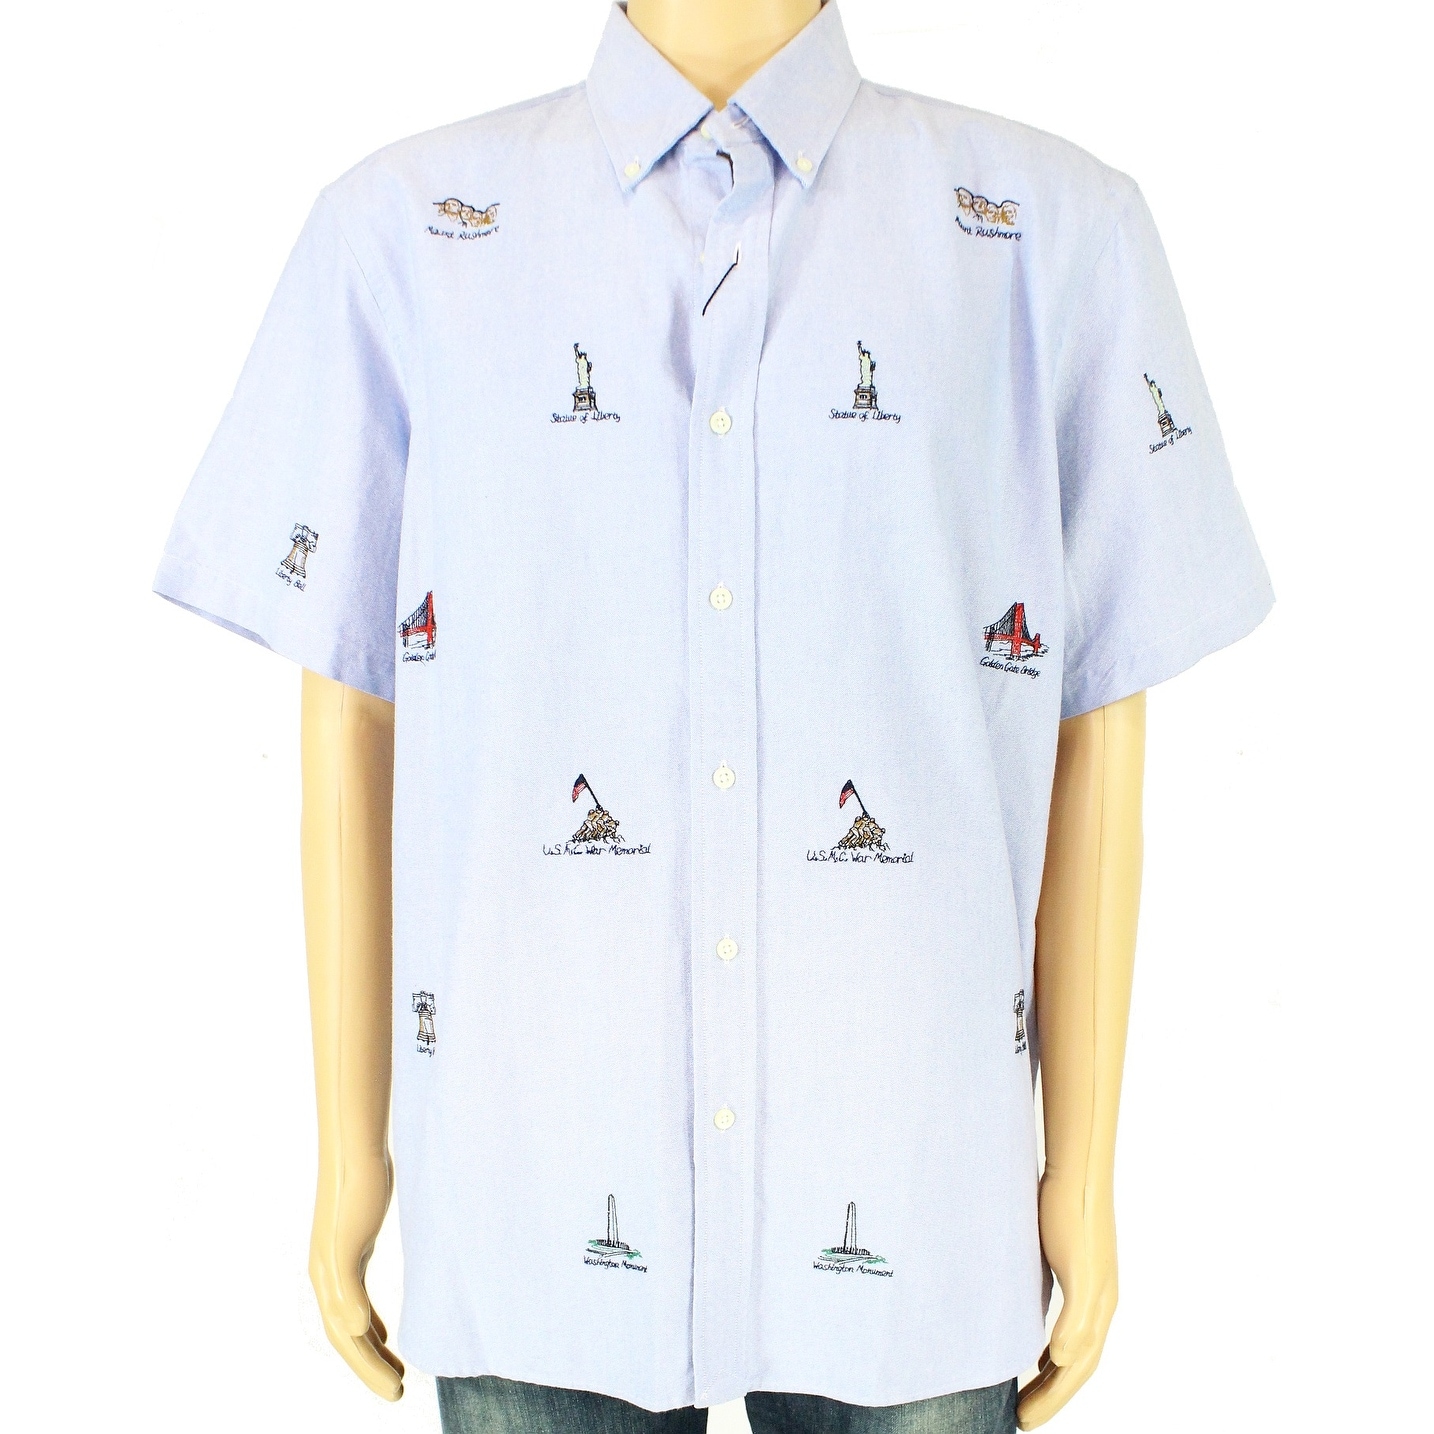 men's polo ralph lauren button down shirts on sale